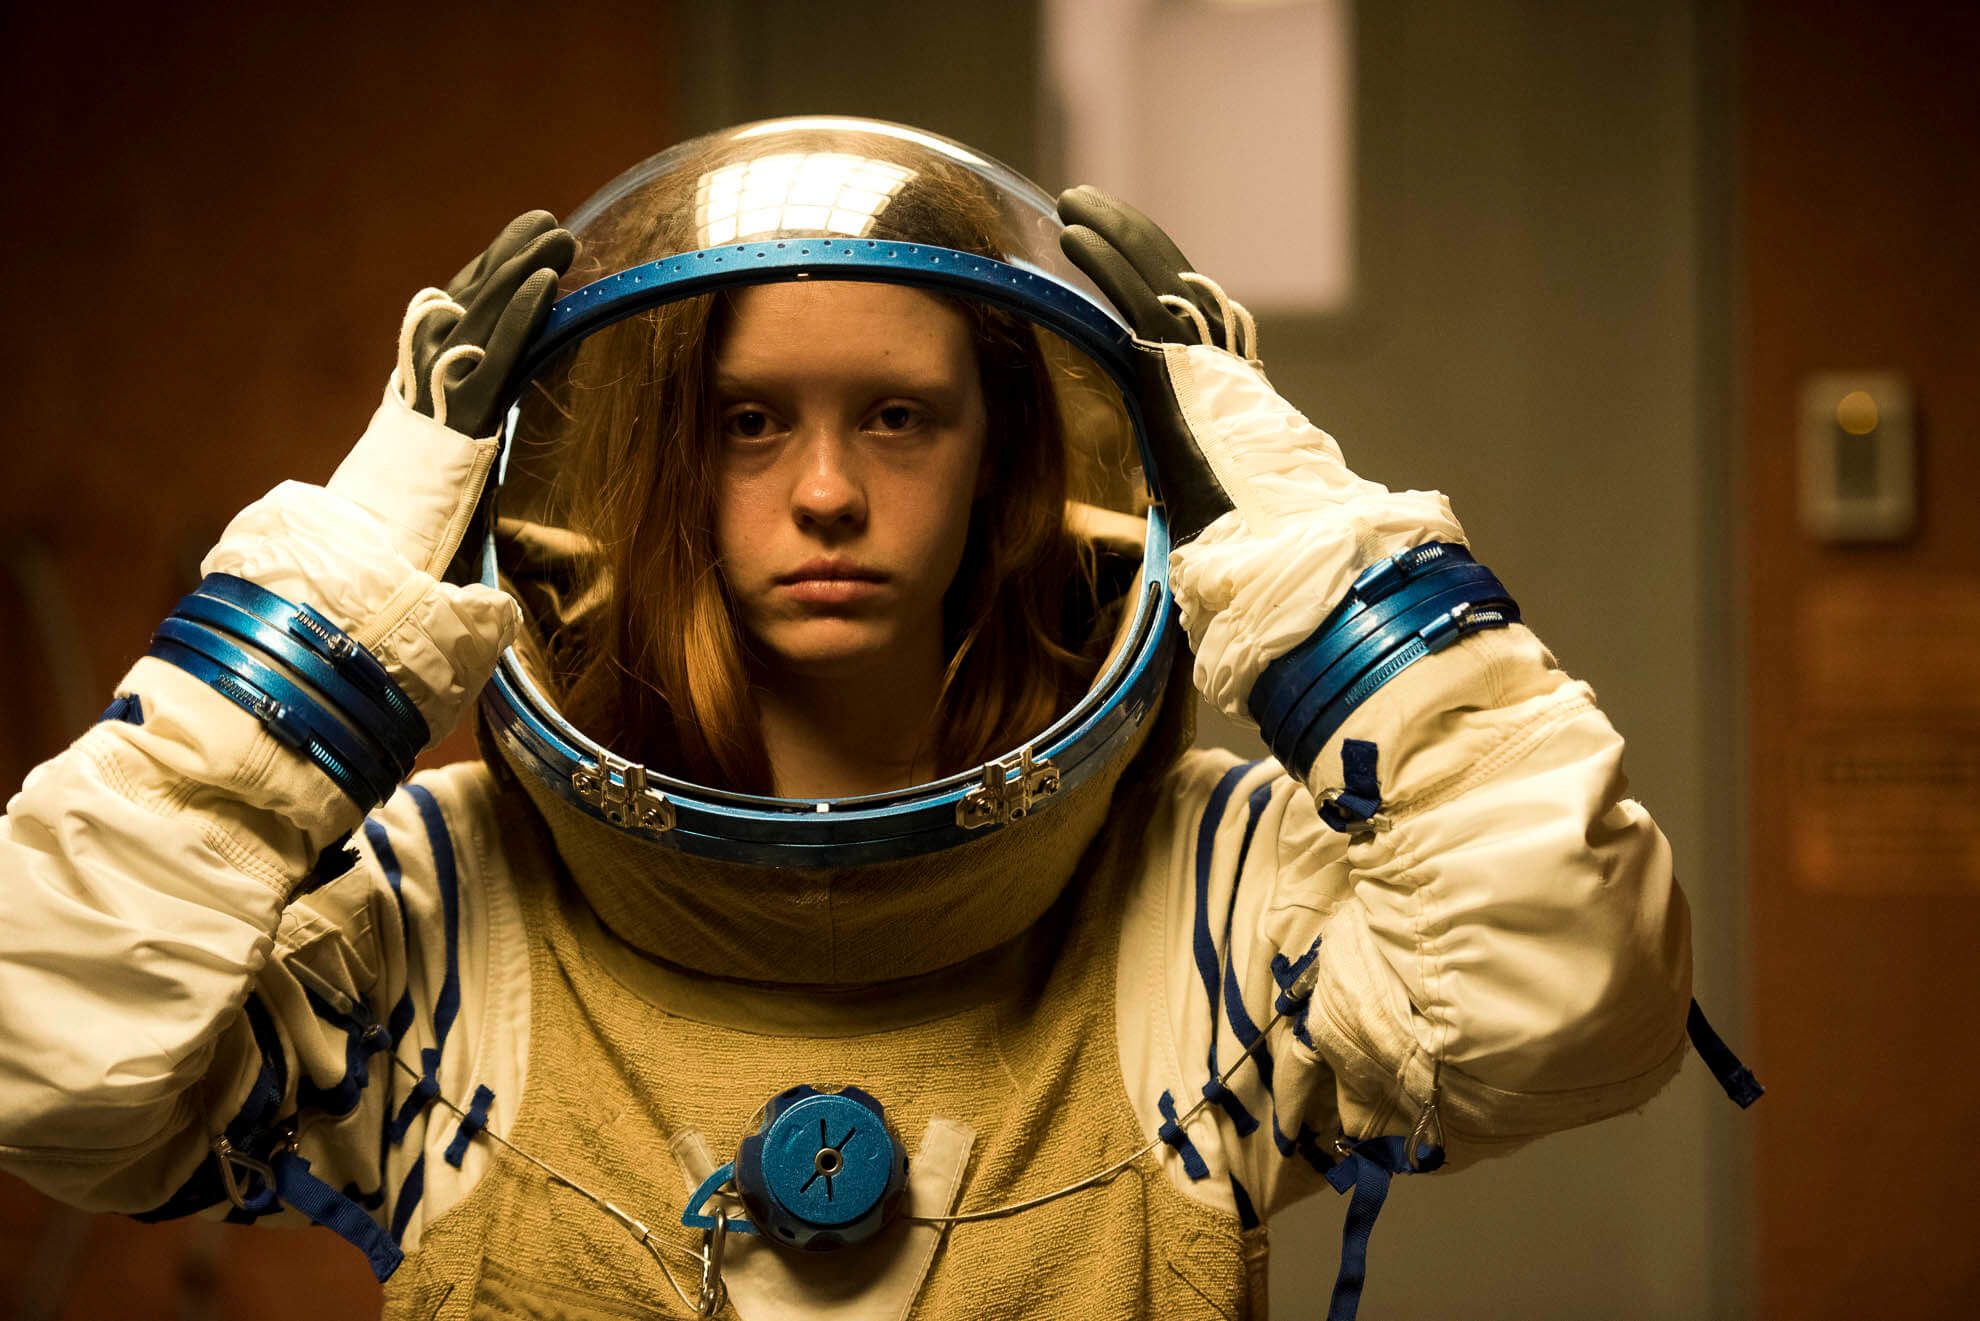 LA joven actriz Mia Goth en un fotograma de la película High Life colocándose la escafandra de un traje espacial.